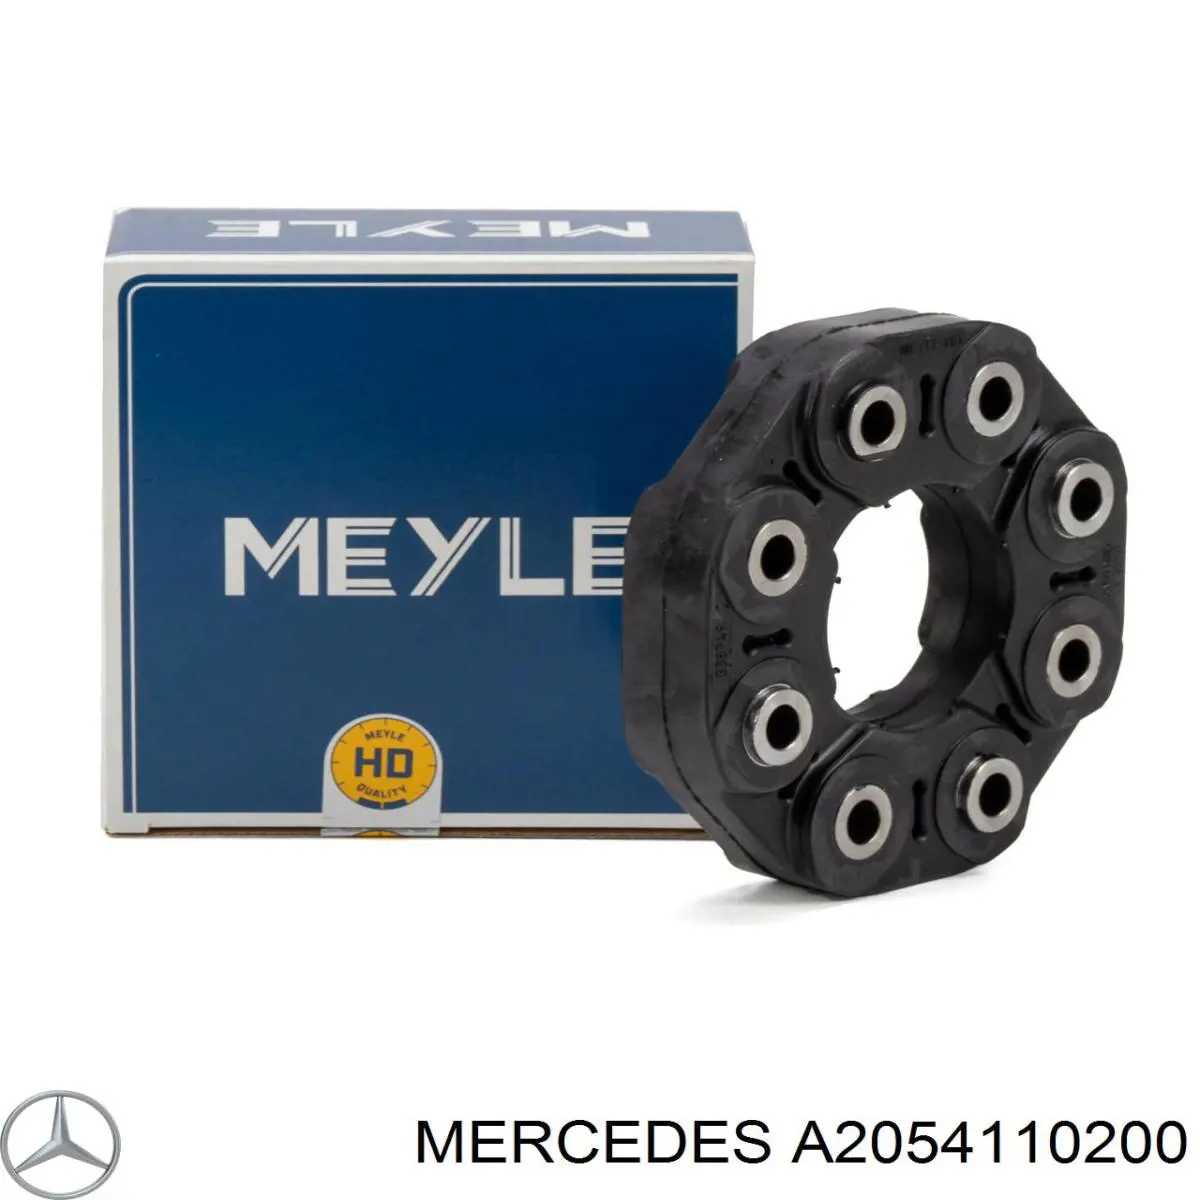 Acoplamiento elástico del cardán para Mercedes S (A217)